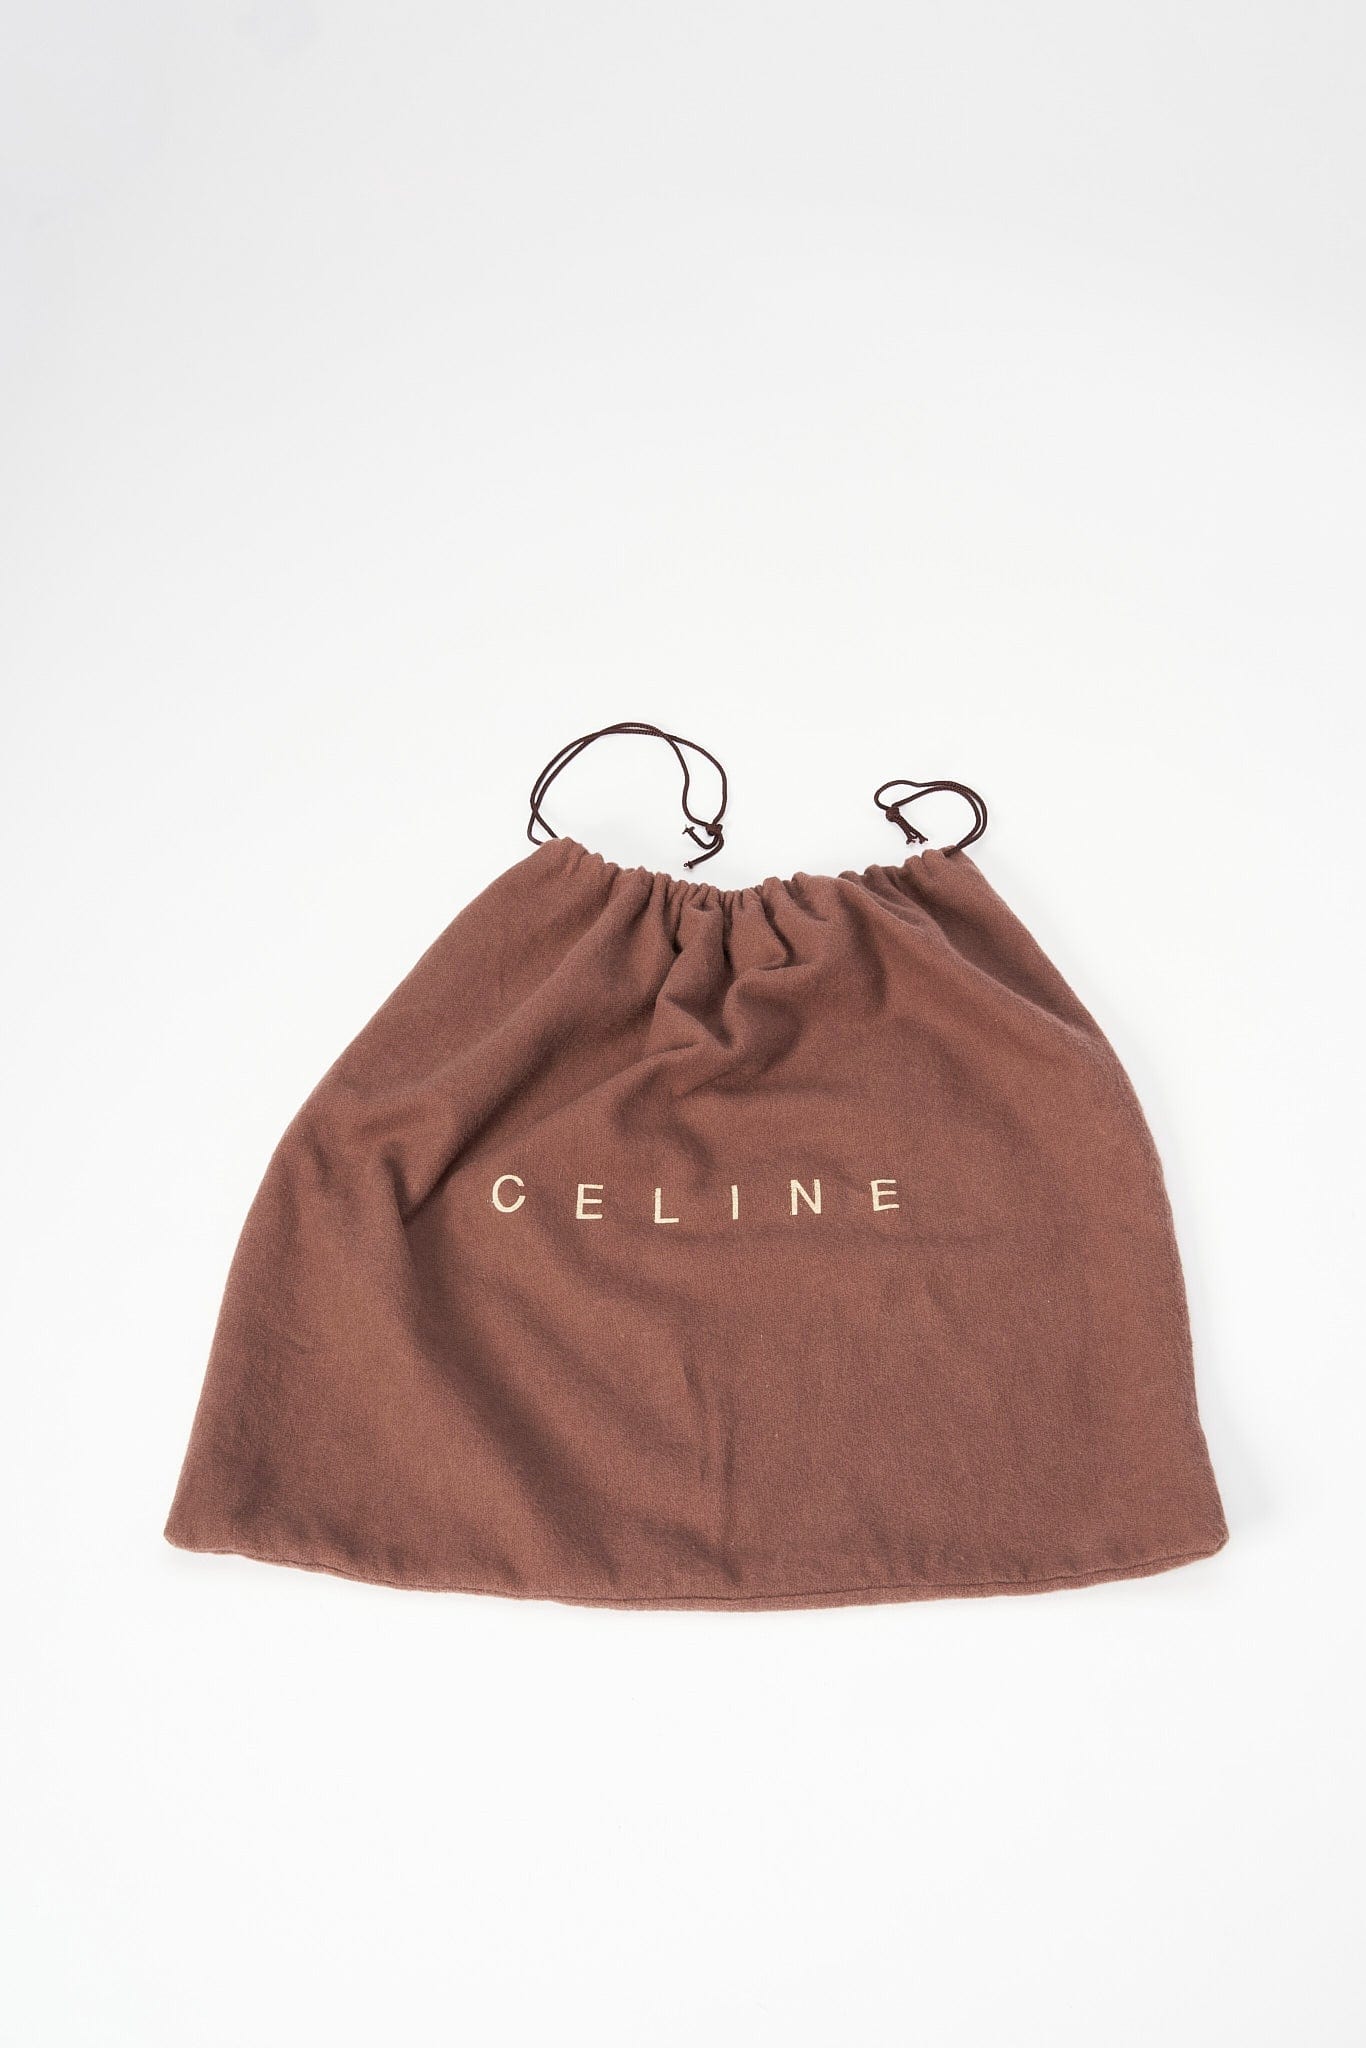 Vintage Celine Suede Bag